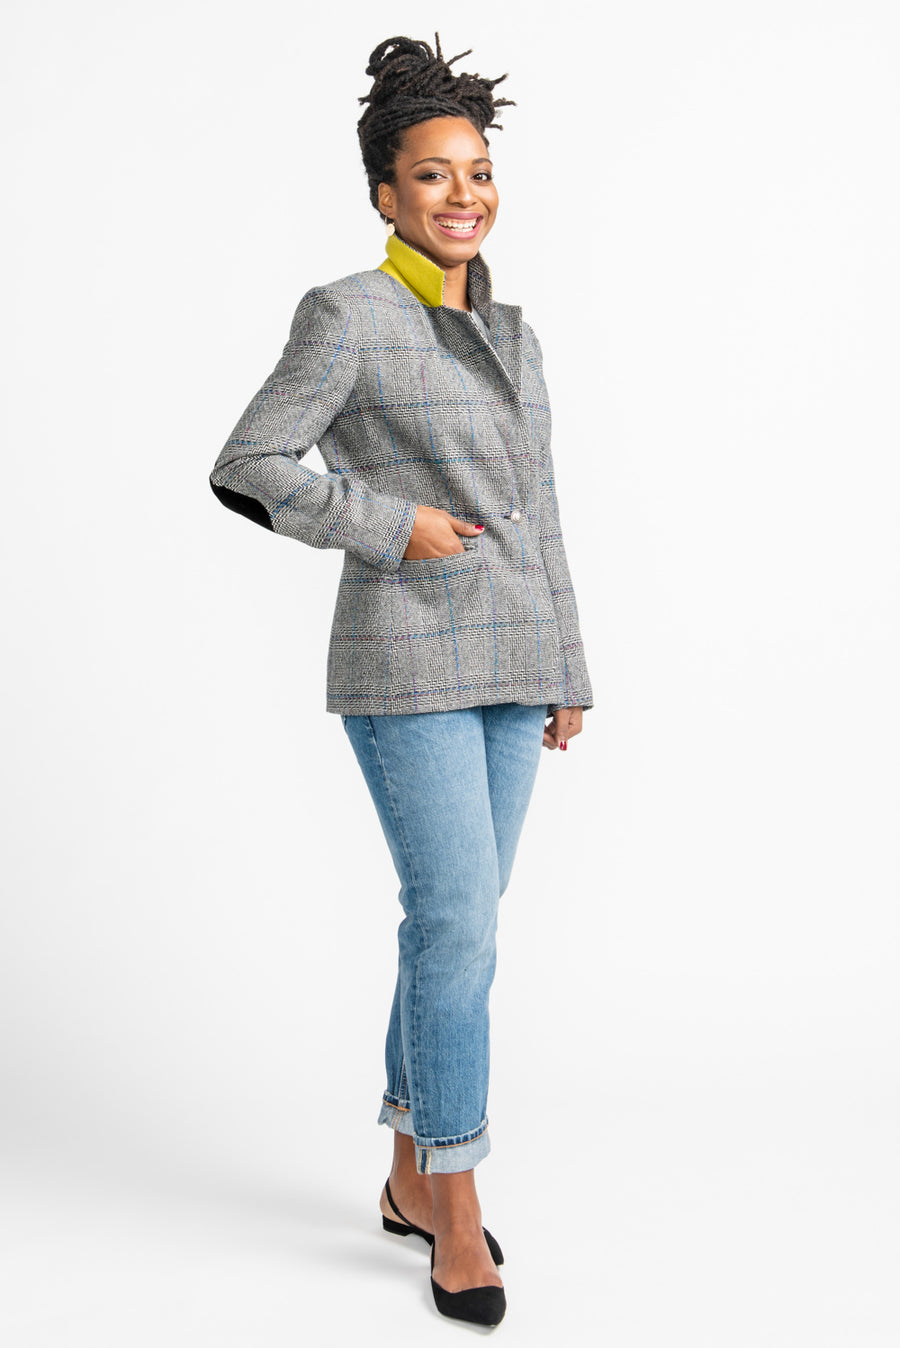 Jasika Blazer Pattern | Tailored Jacket Pattern – Closet Core Patterns